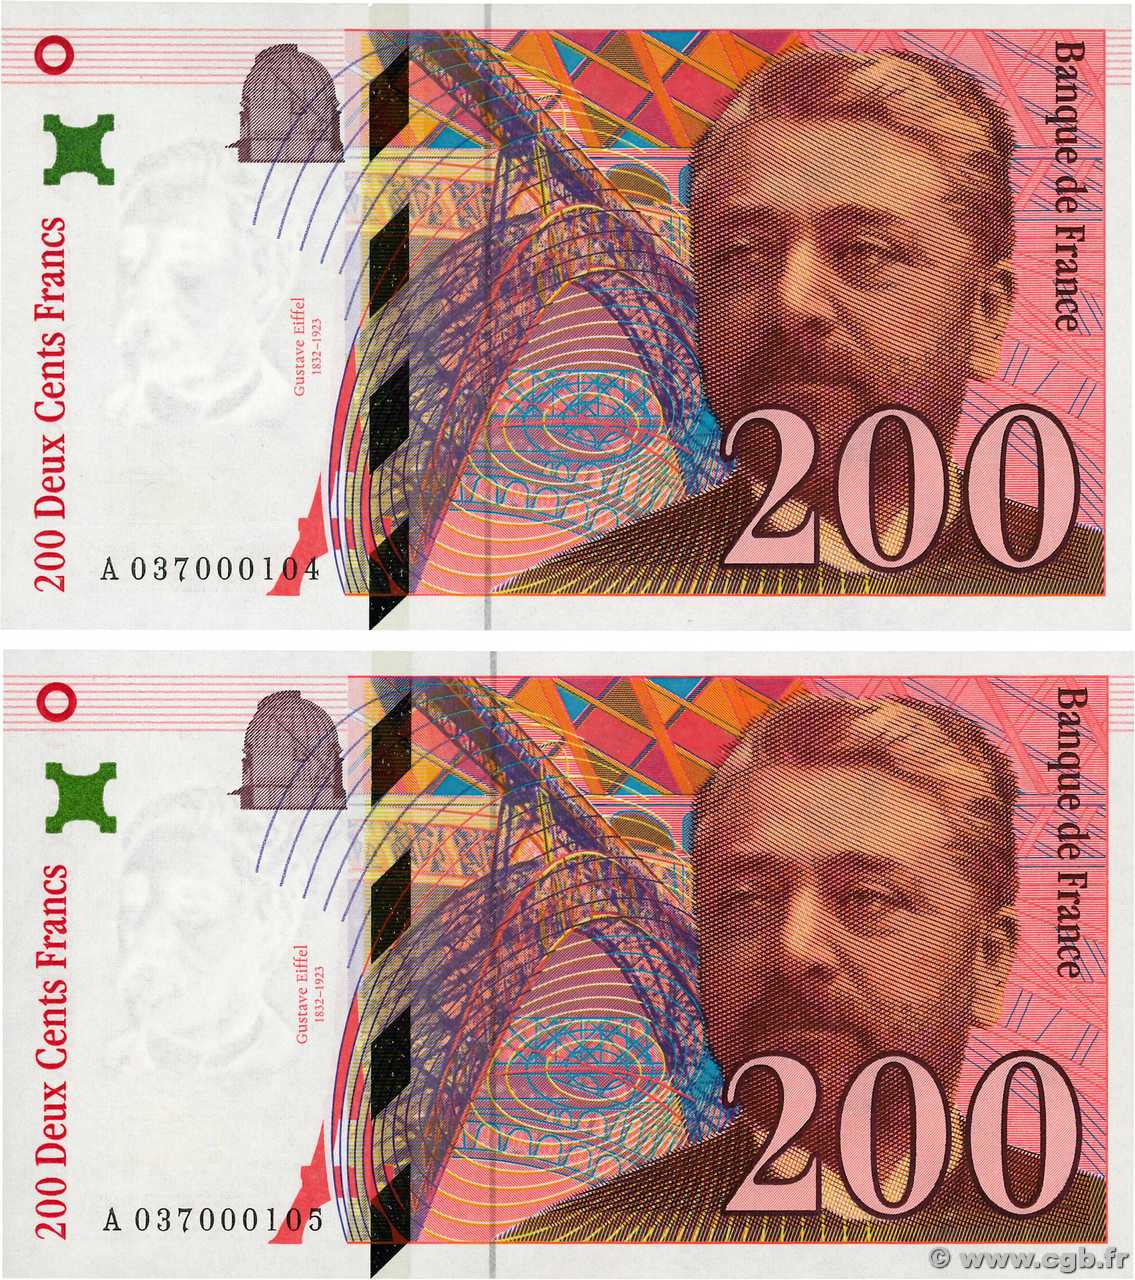 200 Francs EIFFEL Petit numéro FRANCIA  1996 F.75.03A1 FDC